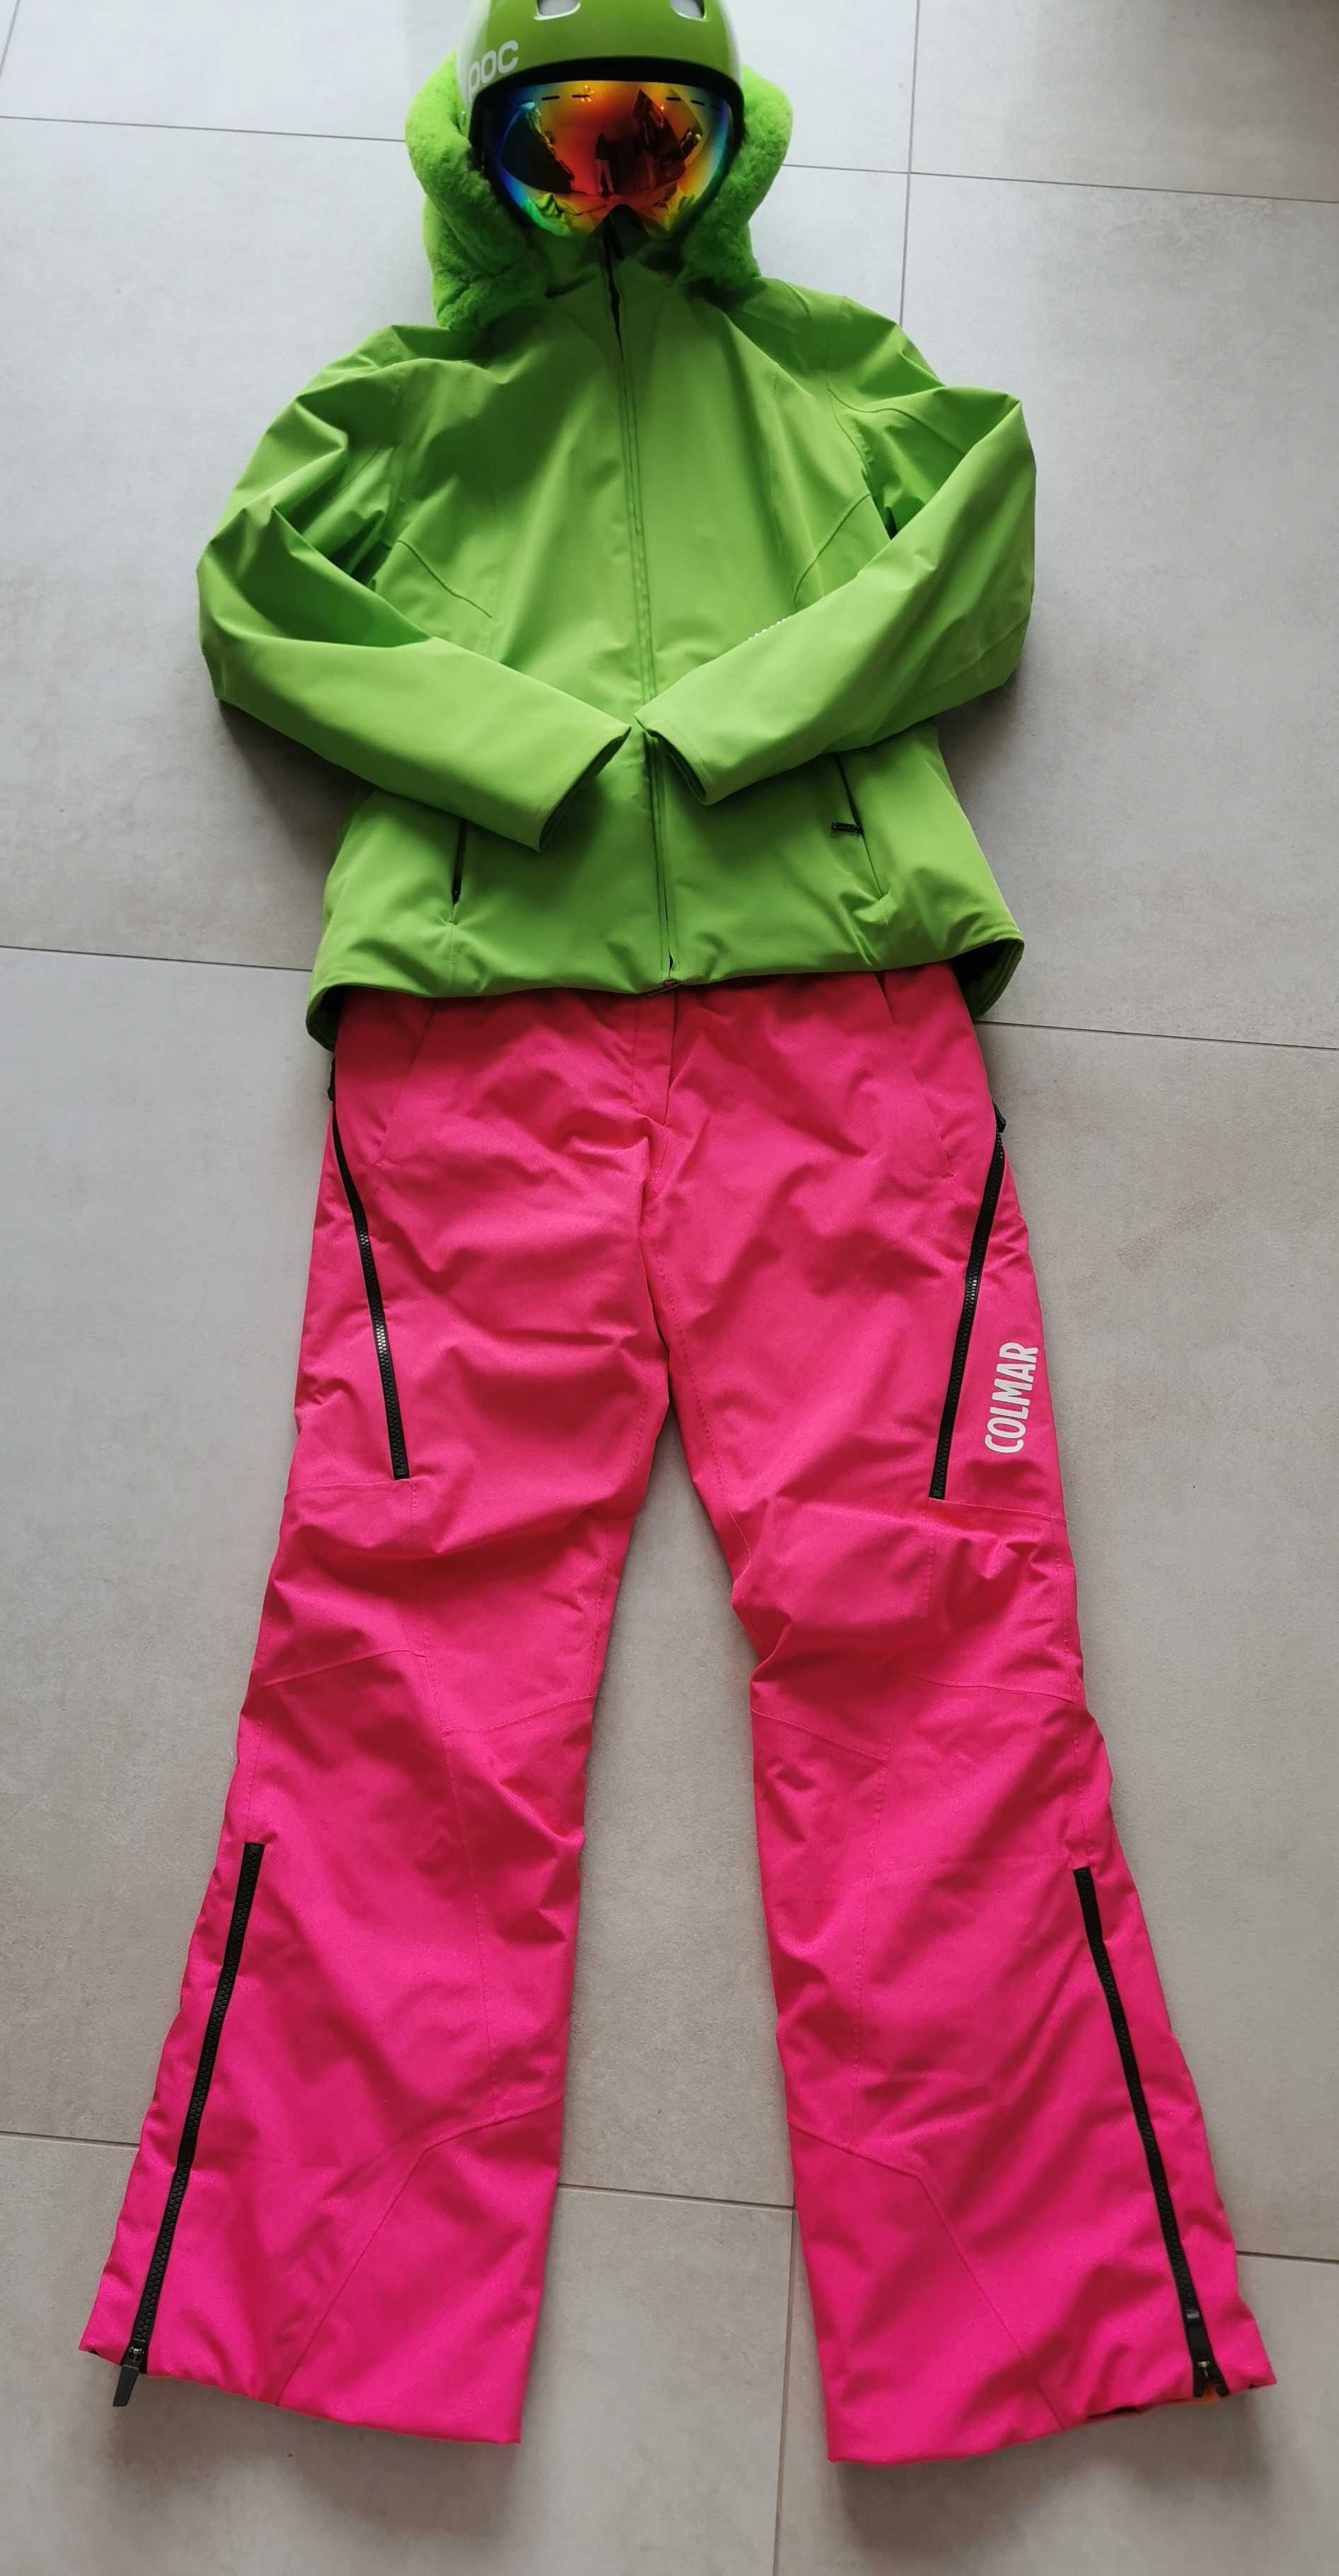 Zestaw narciarski Kurtka  Rh+, spodnie Colmar, kask POC, Gogle